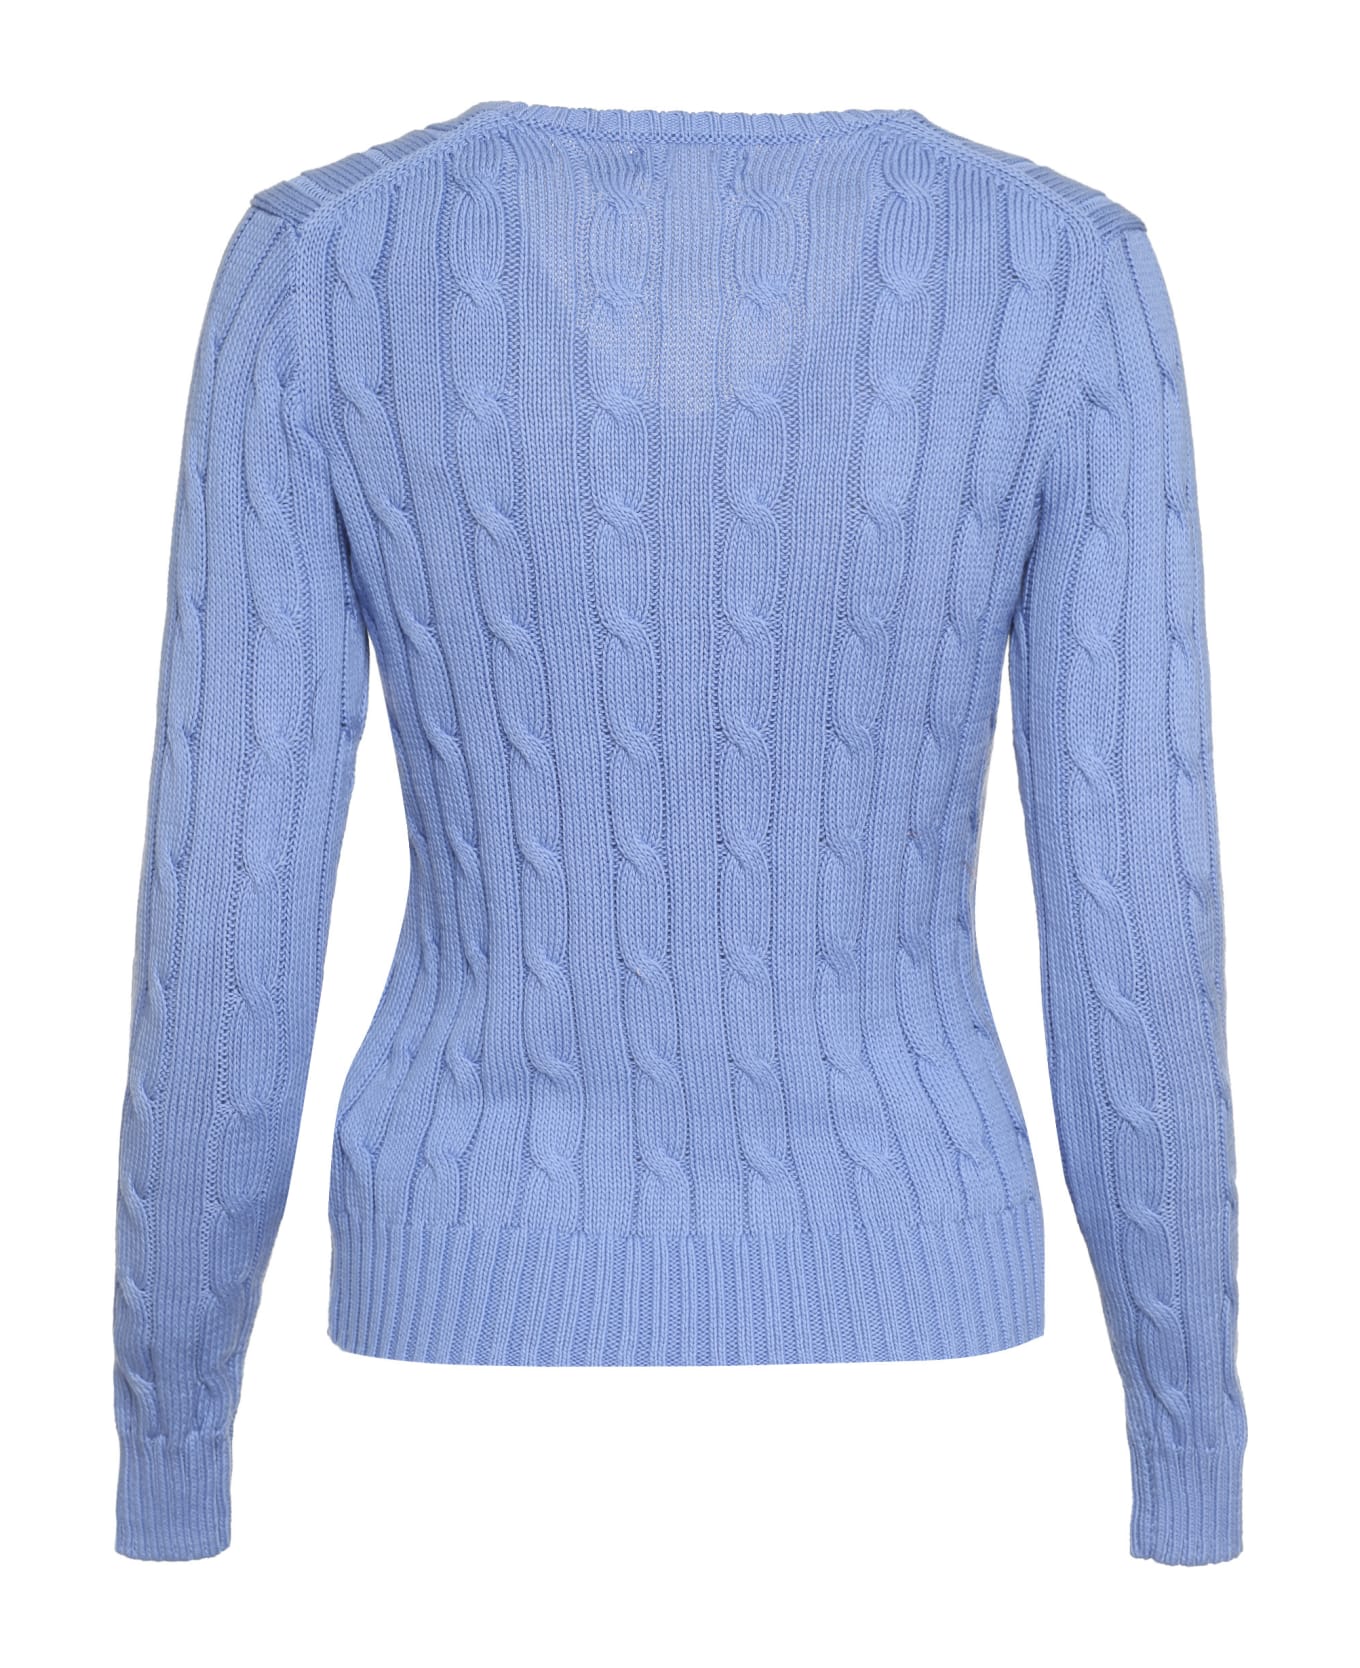 Ralph Lauren Pony Sweater - Blue ニットウェア